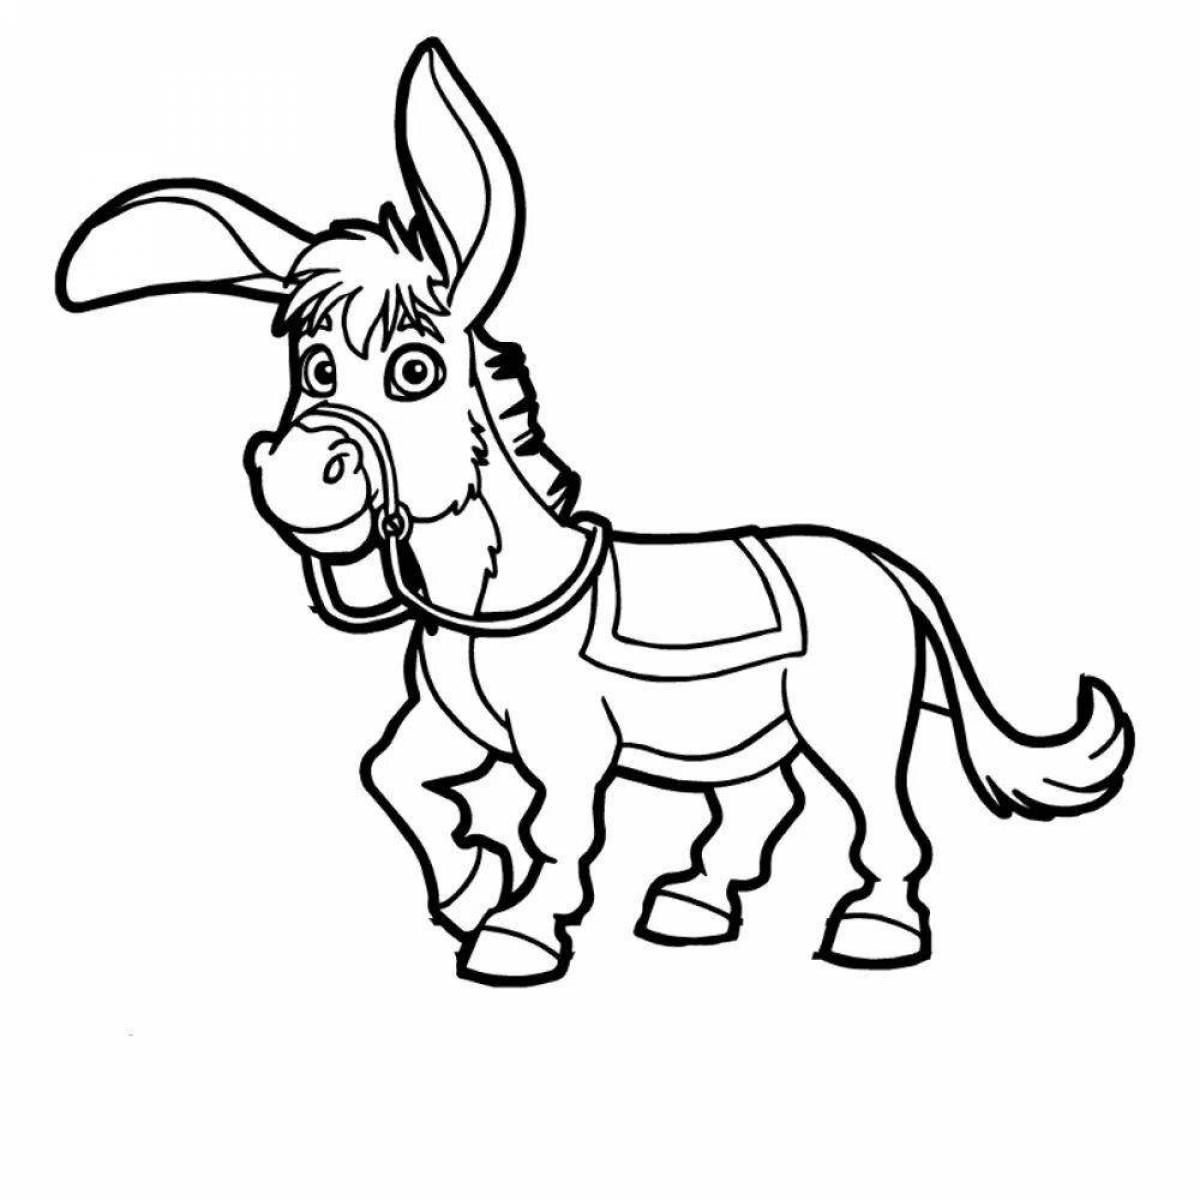 Joyful donkey coloring for kids